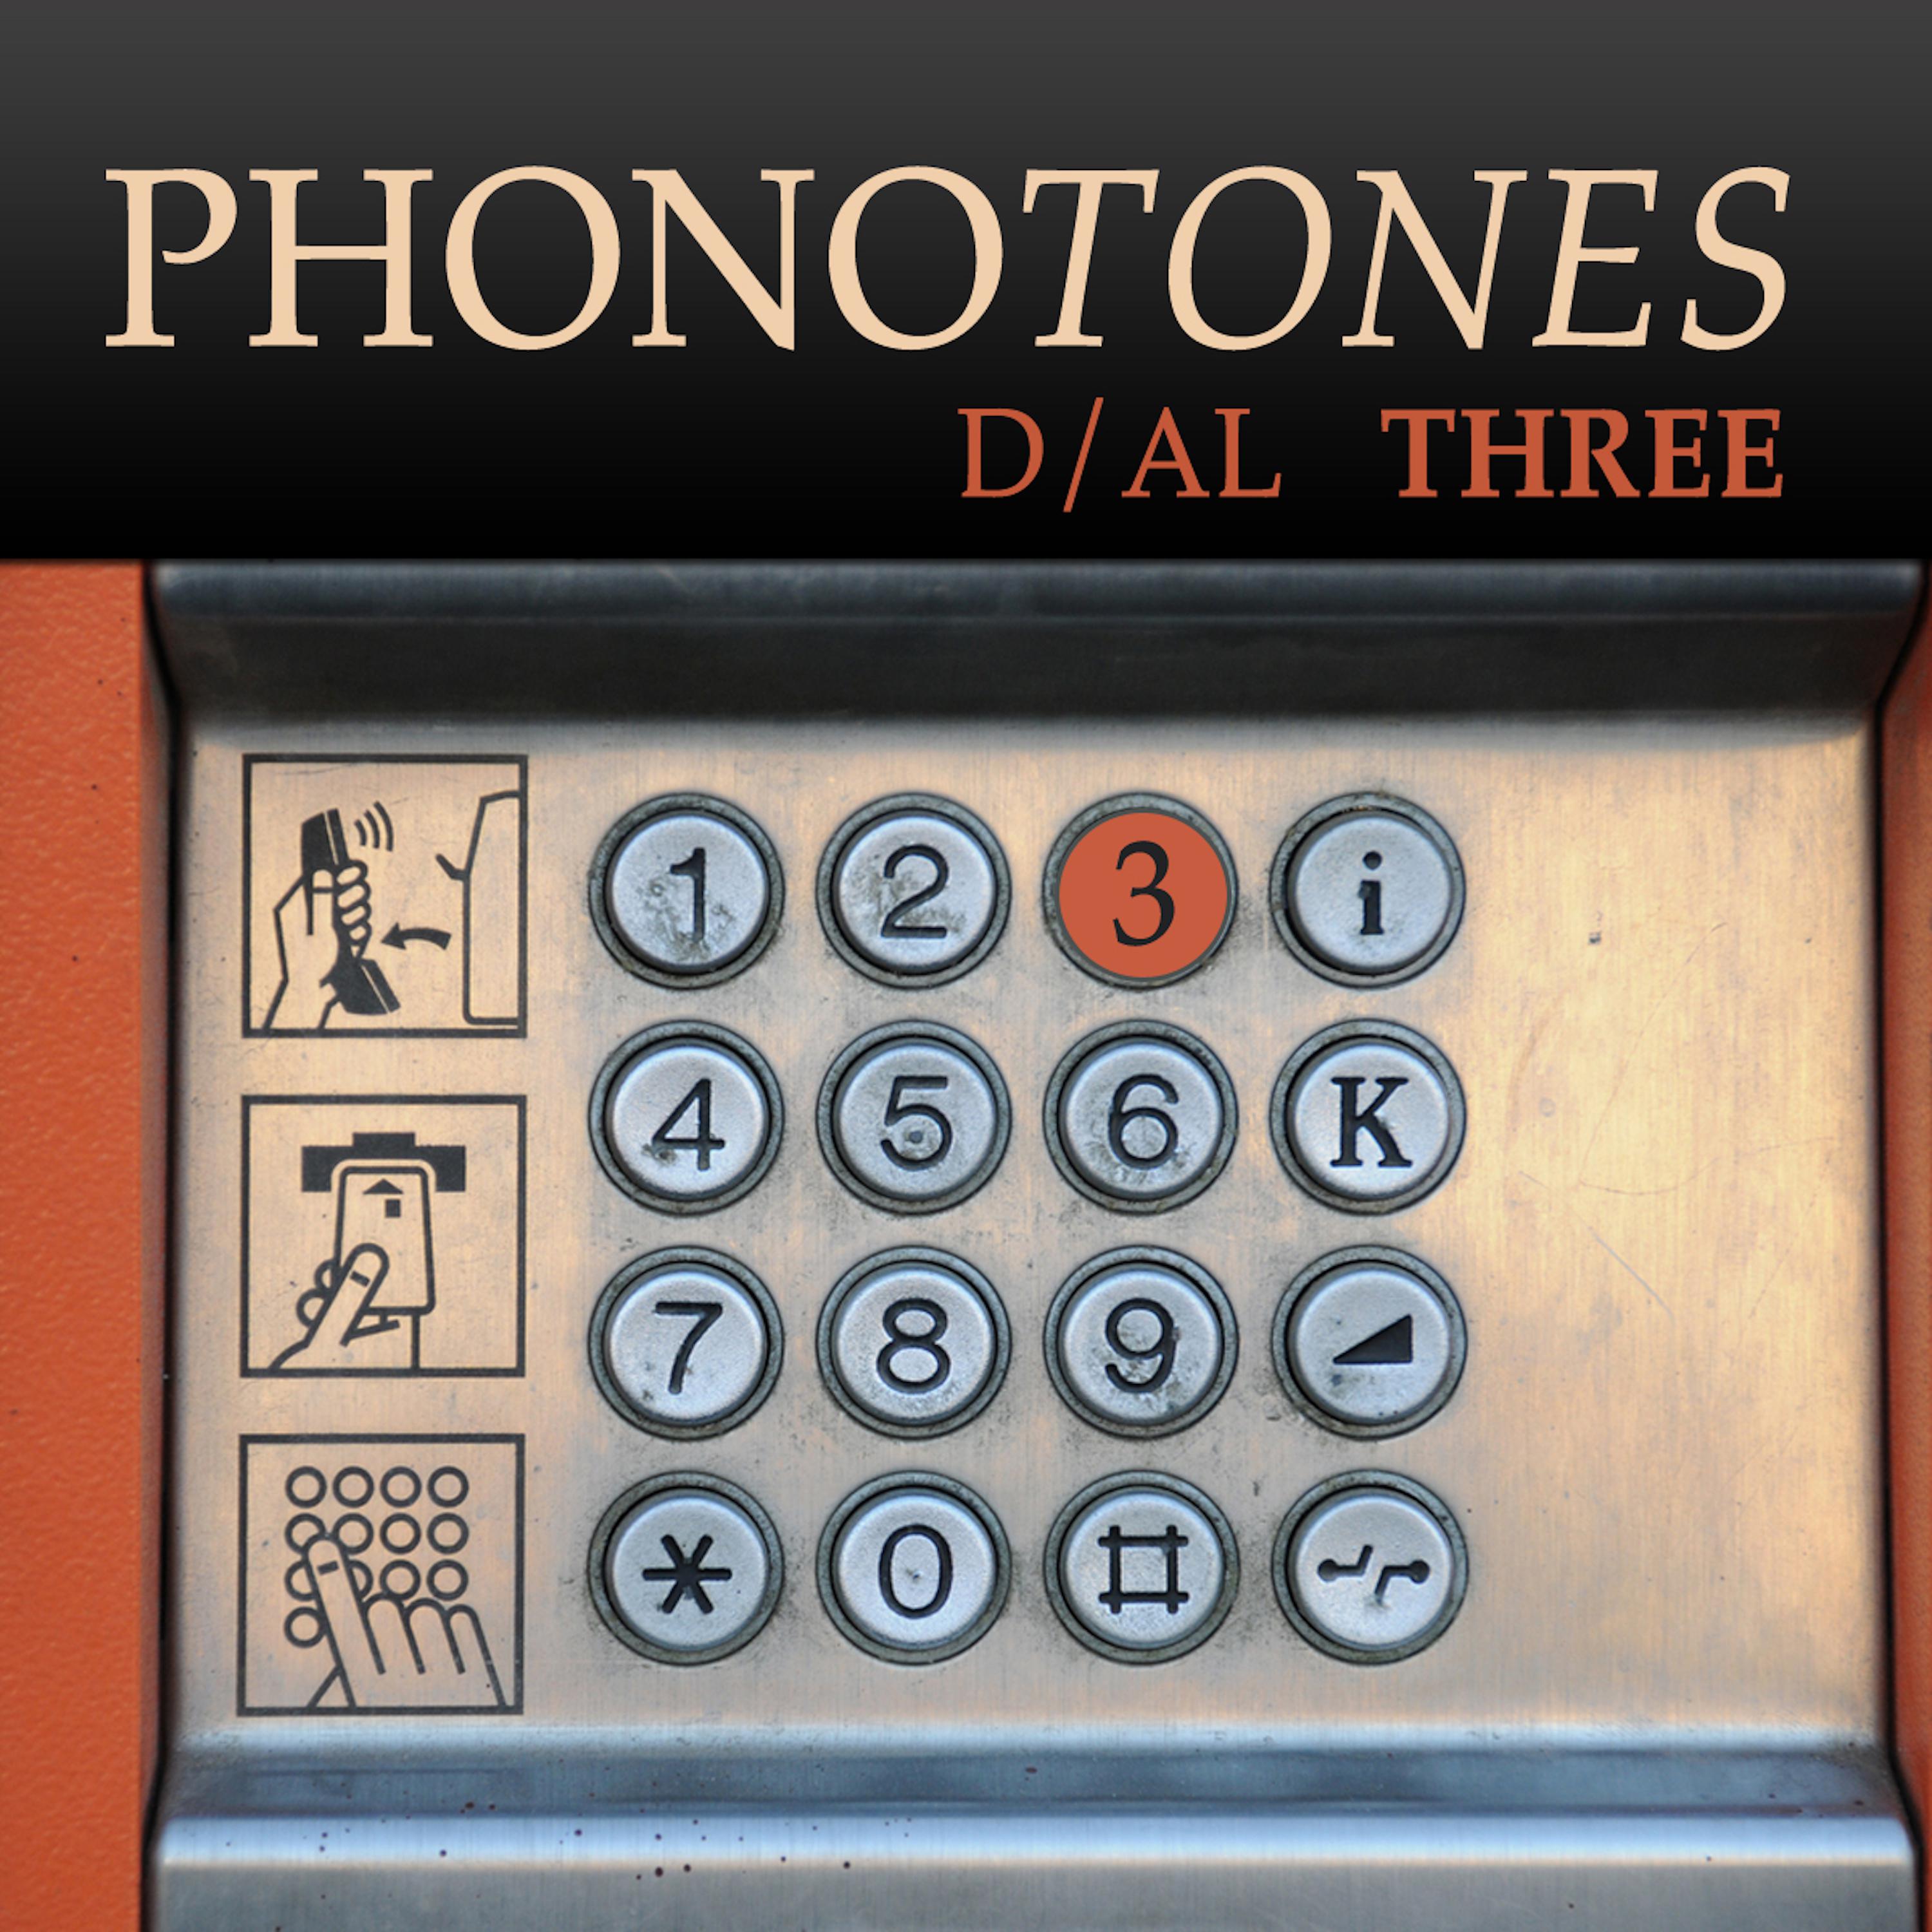 Phonotones - Dial 3